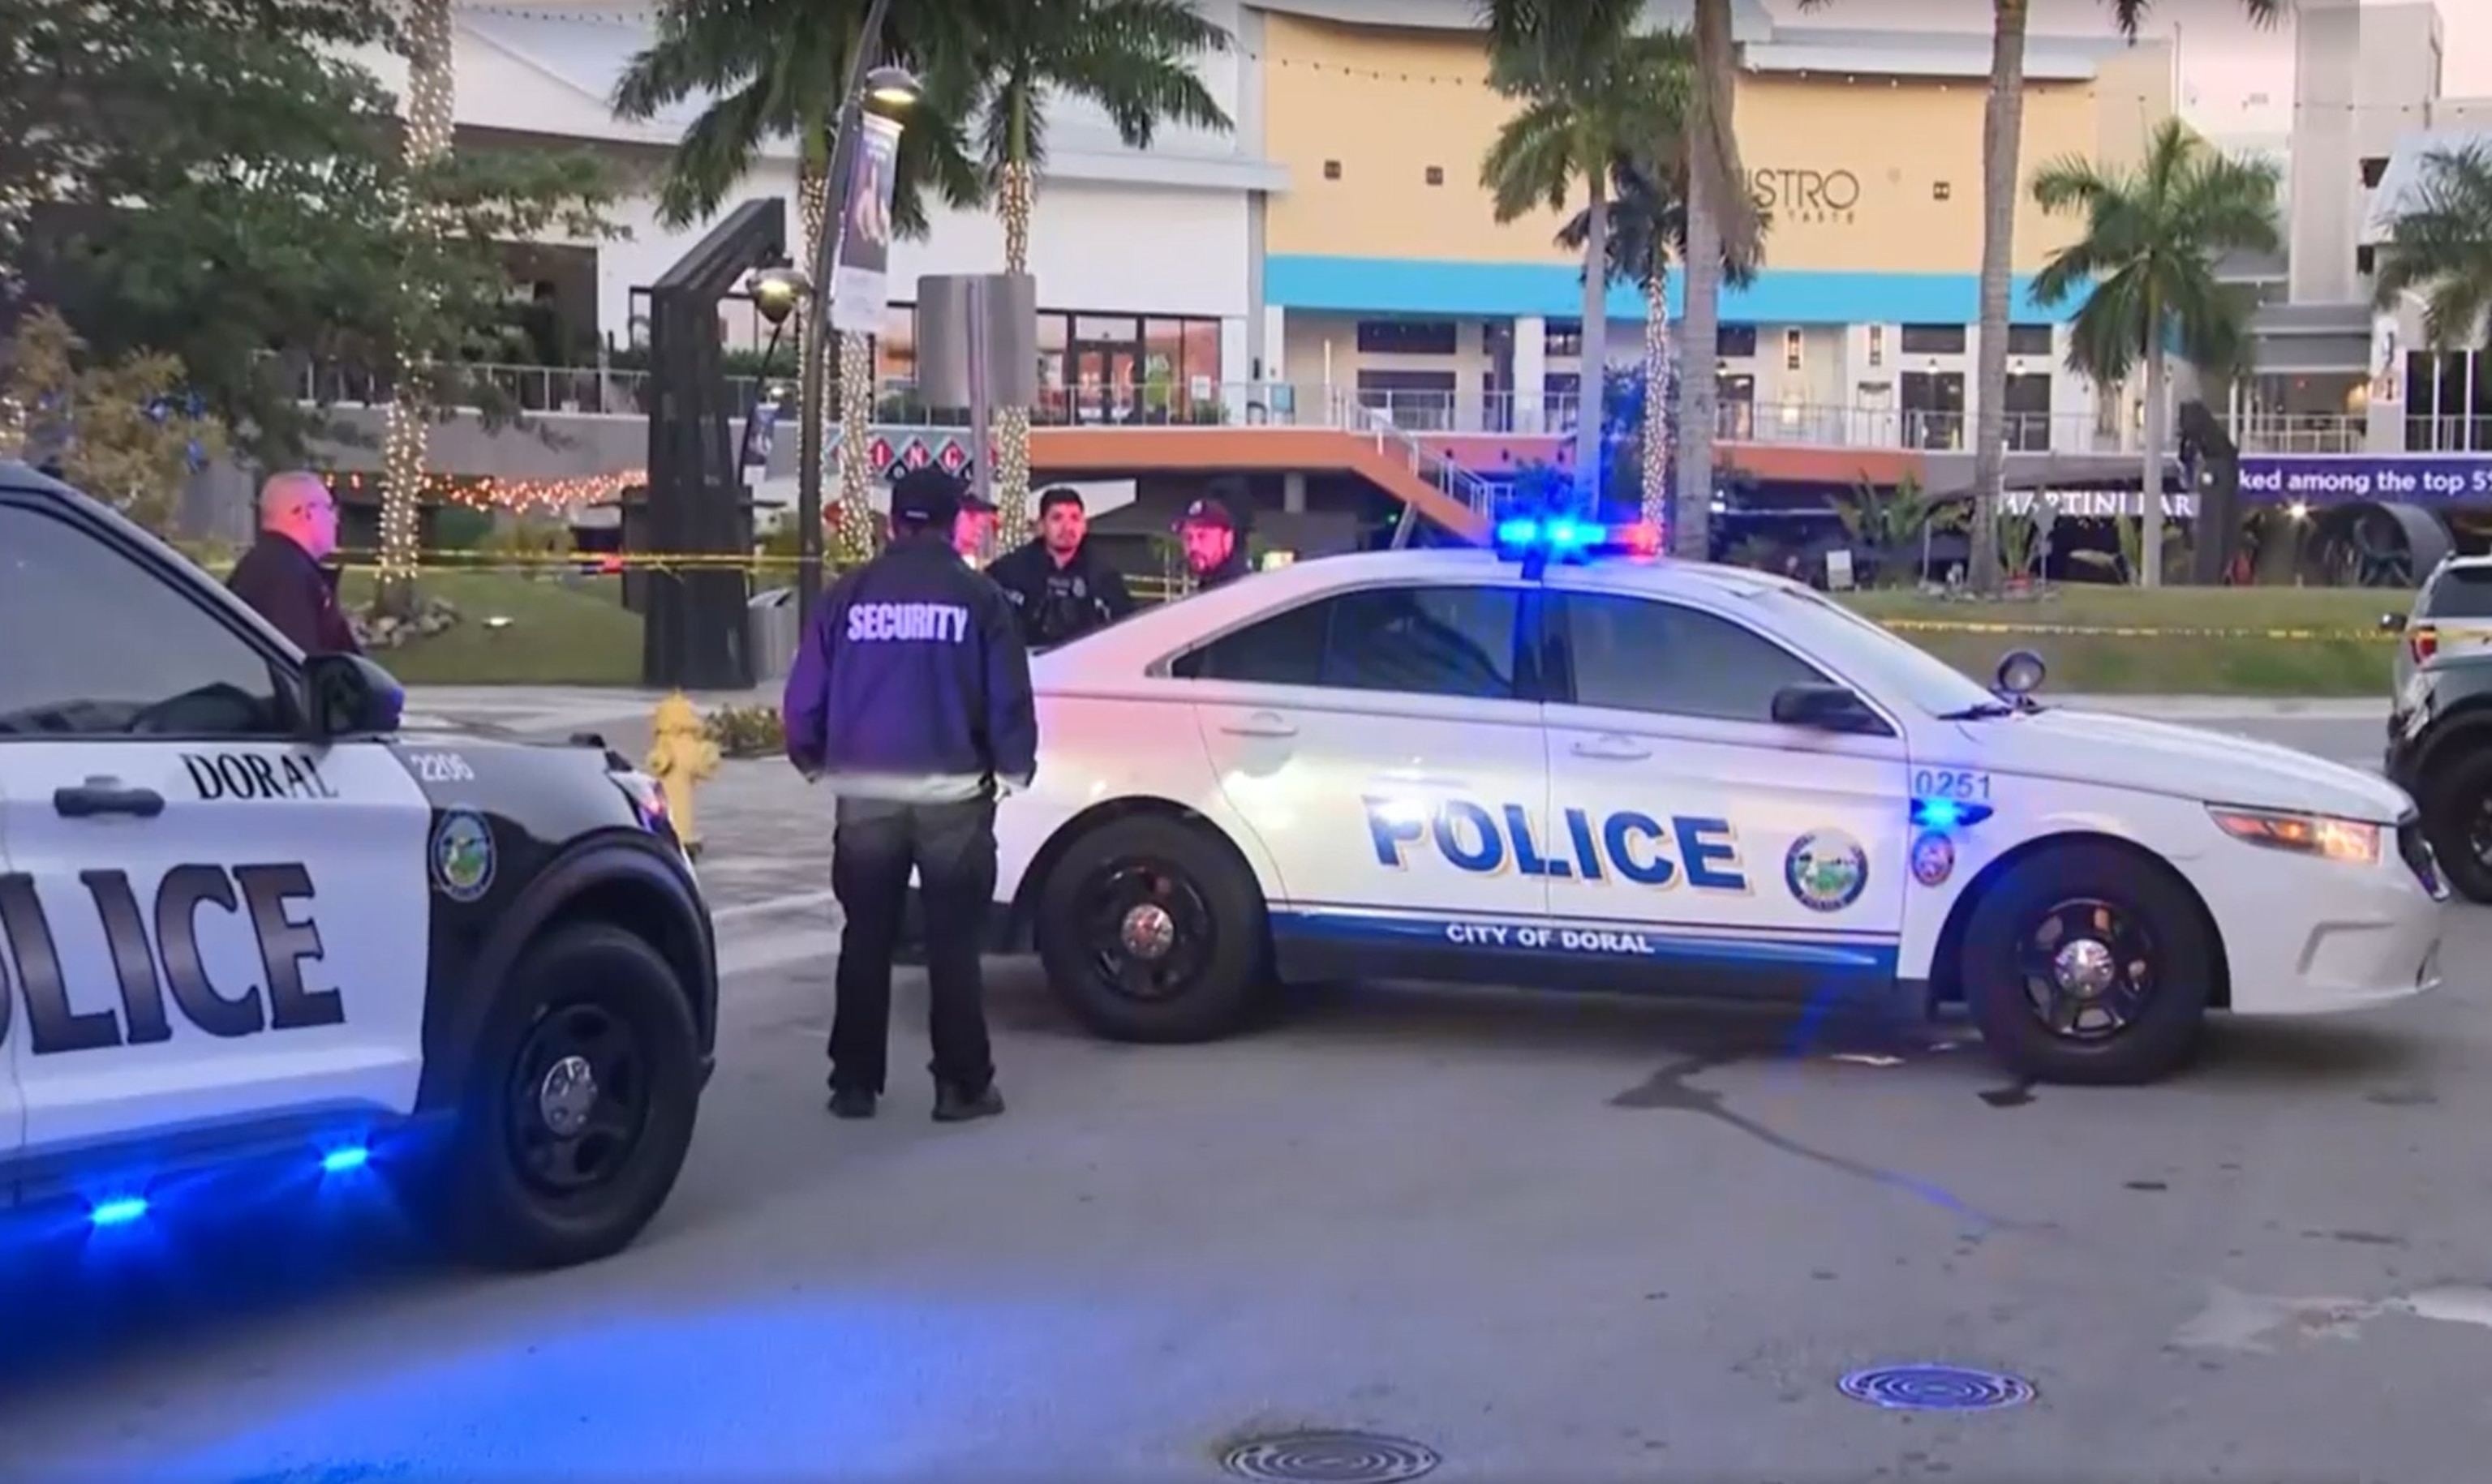 FOTO: In diesem Screenshot aus einem Video werden Polizeibeamte am Ort einer Schießerei in Doral, Florida, am 6. April 2024 gezeigt.